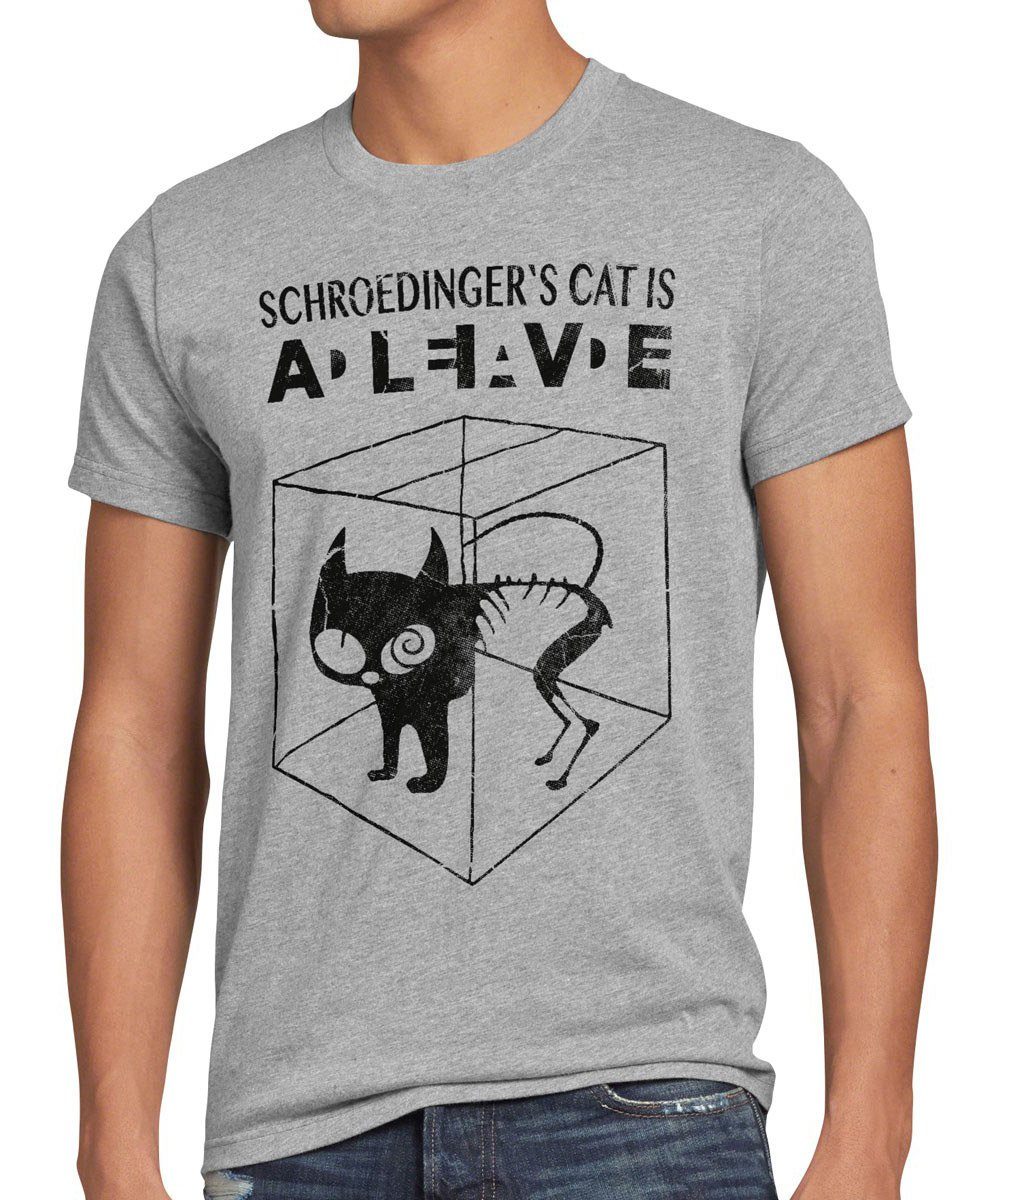 style3 Print-Shirt Herren T-Shirt Schroedinger's Katze Big Bang Sheldon schrödingers Theory cat neu grau meliert